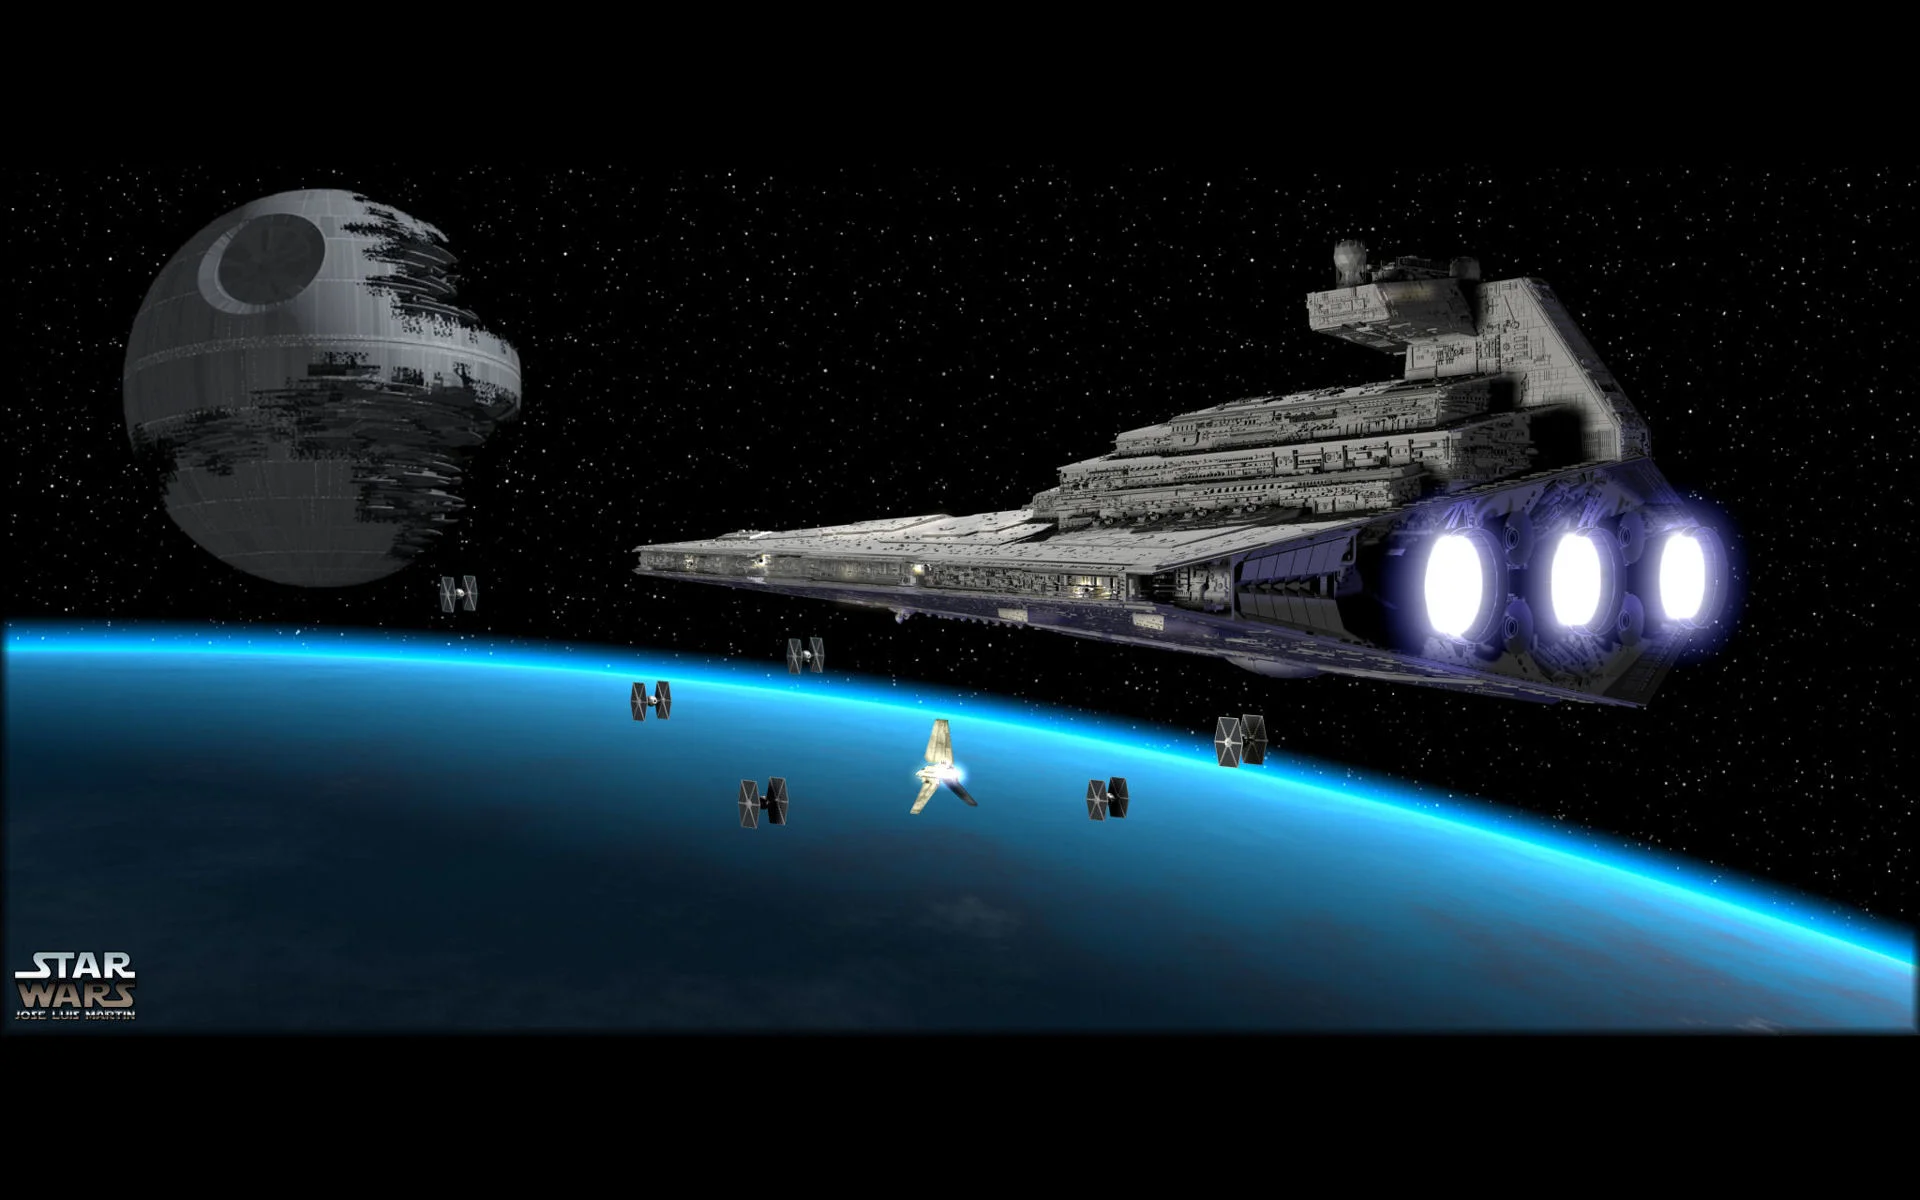 Sci Fi – Star Wars Death Star Star Destroyer TIE Fighter Wallpaper